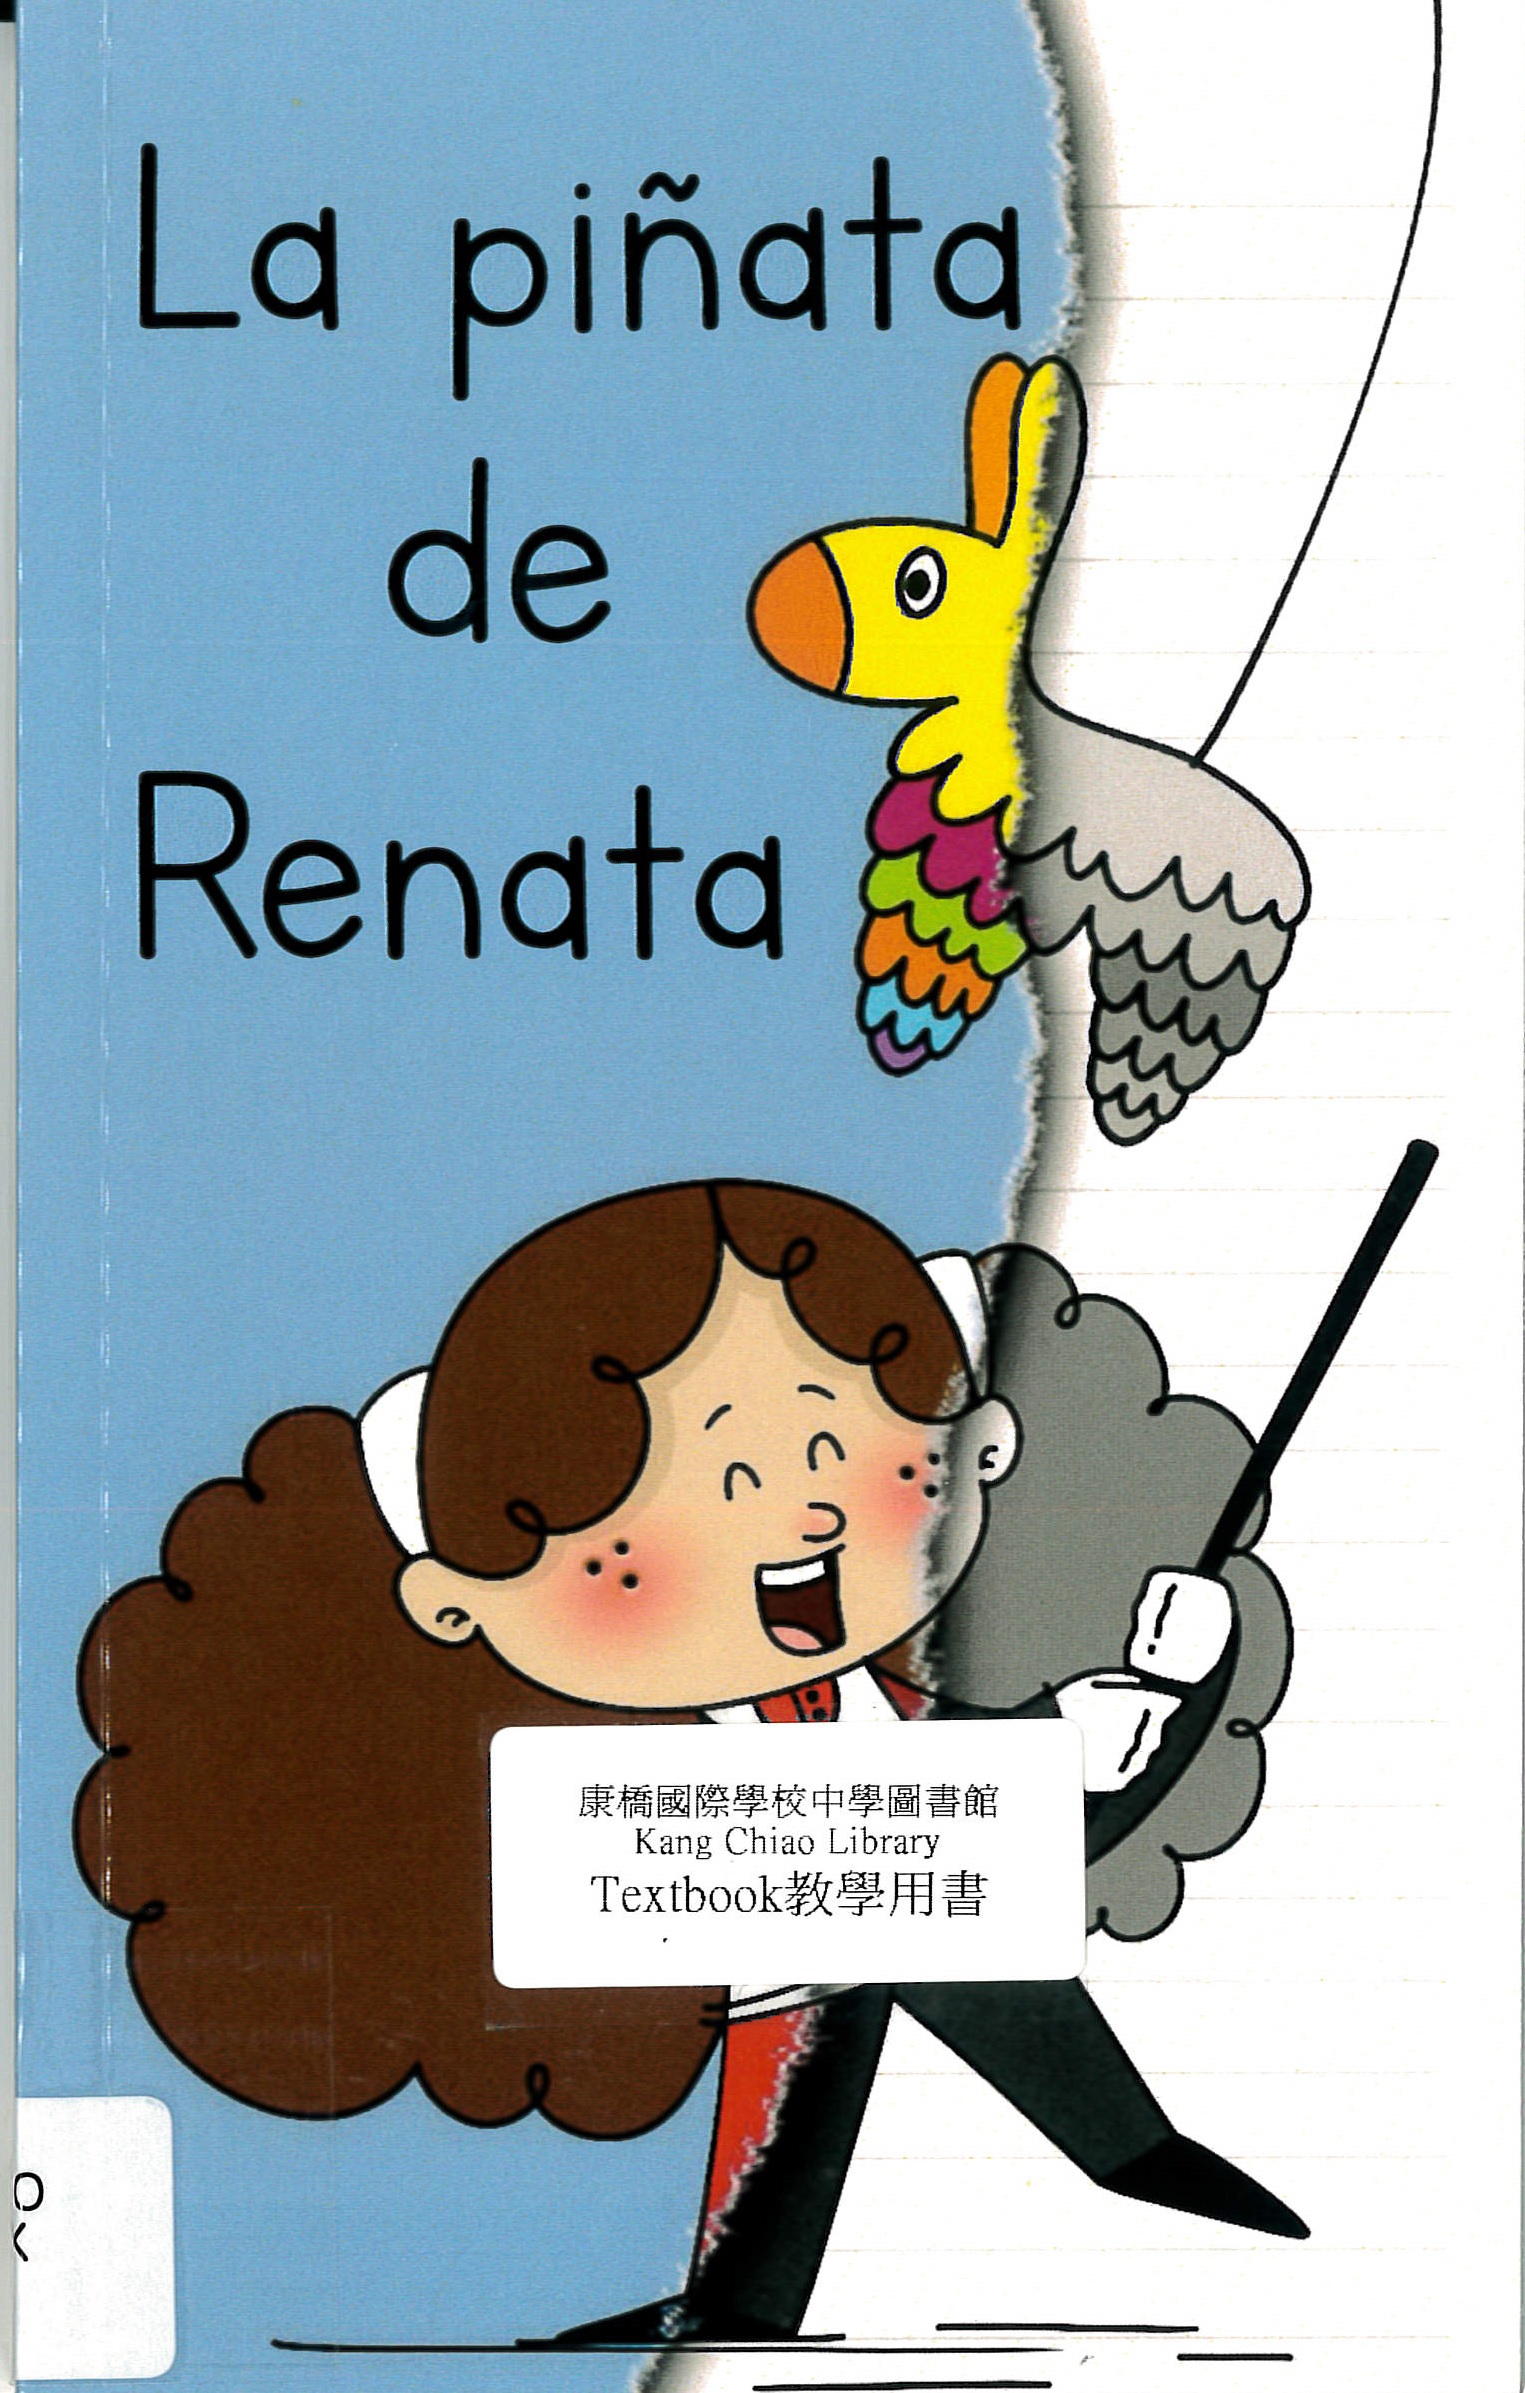 La piñata de Renata